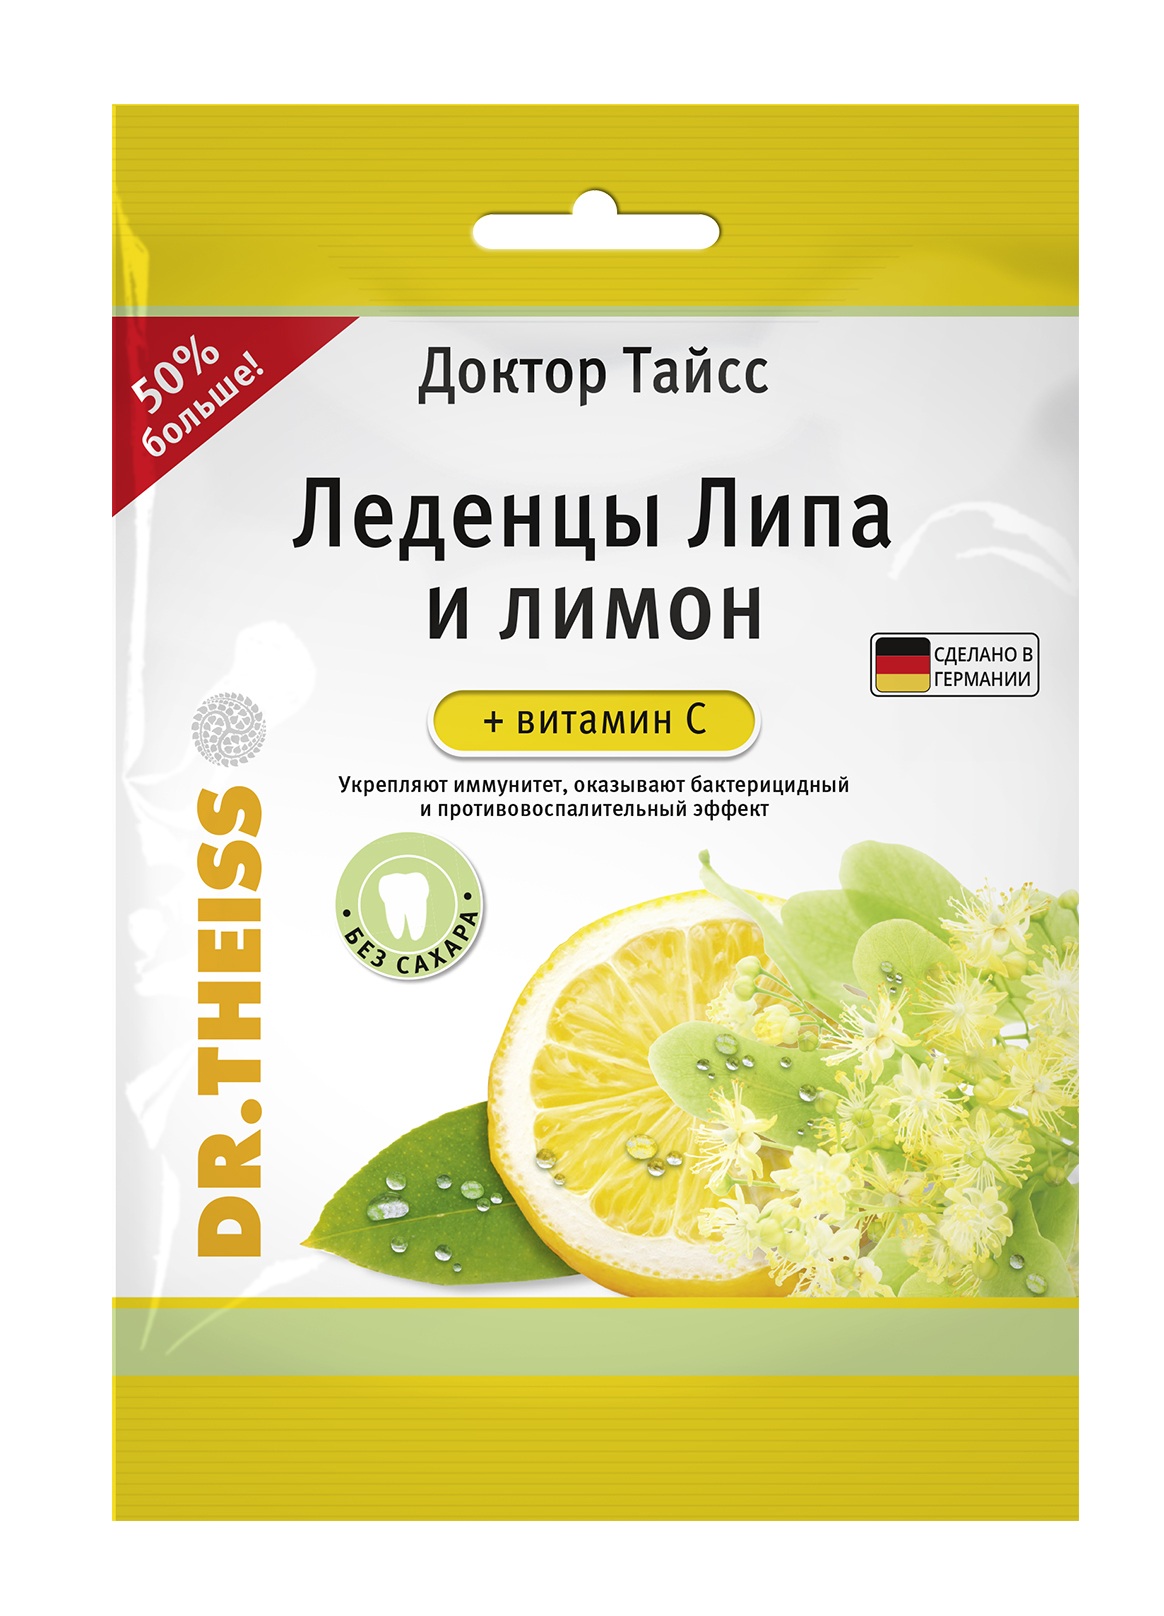 Доктор Тайсс леденцы липа и лимон+витамин С 75г